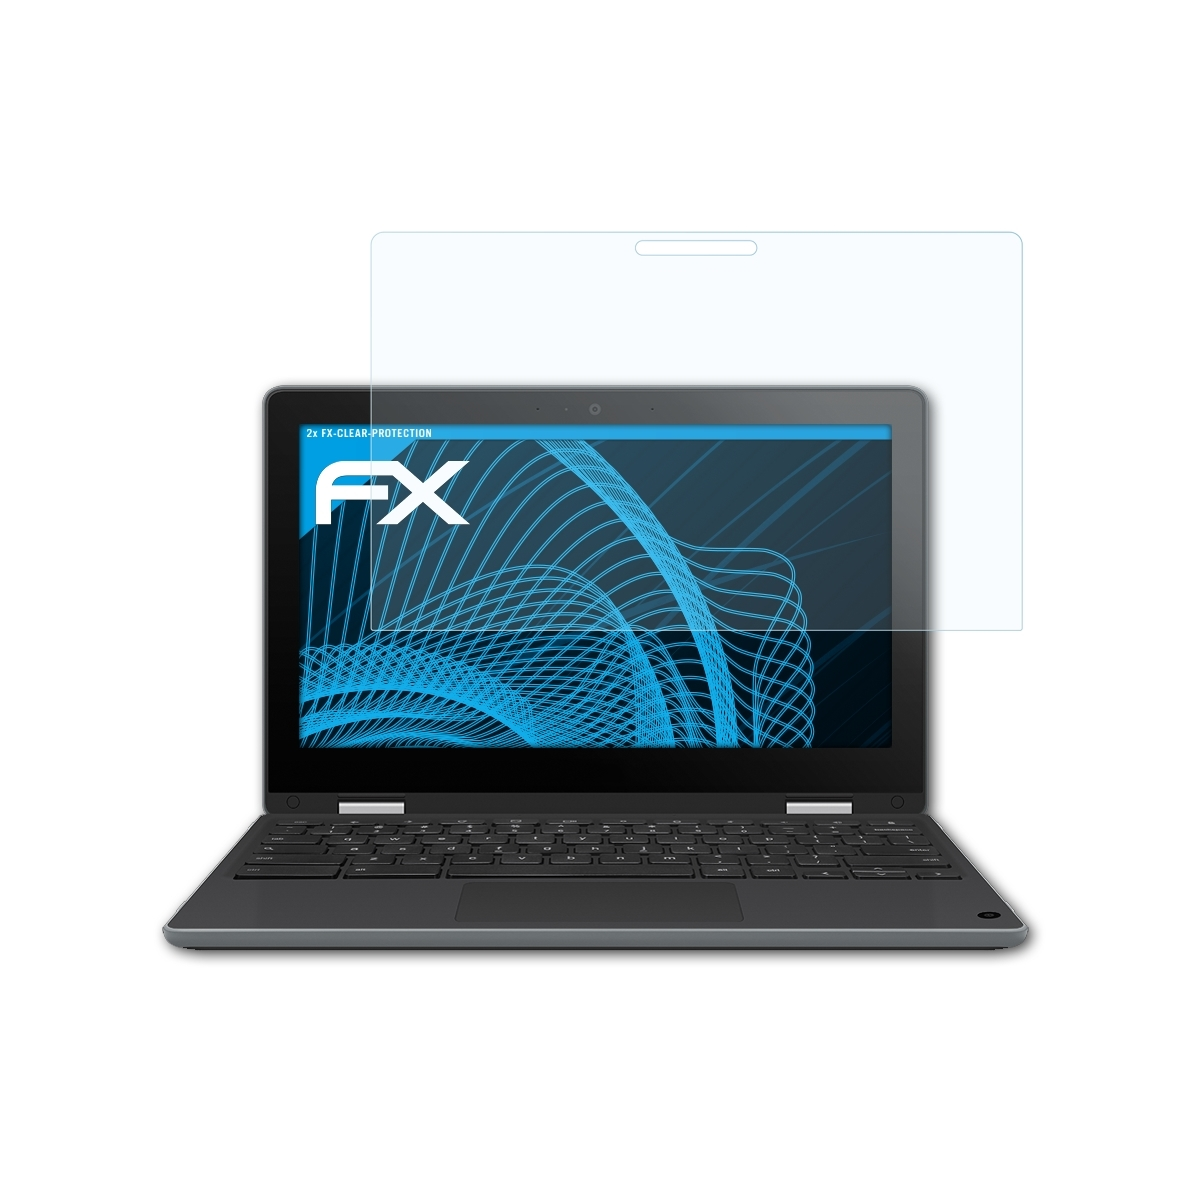 Displayschutz(für ATFOLIX Asus Flip 2x Chromebook (C214MA-BW0163)) FX-Clear